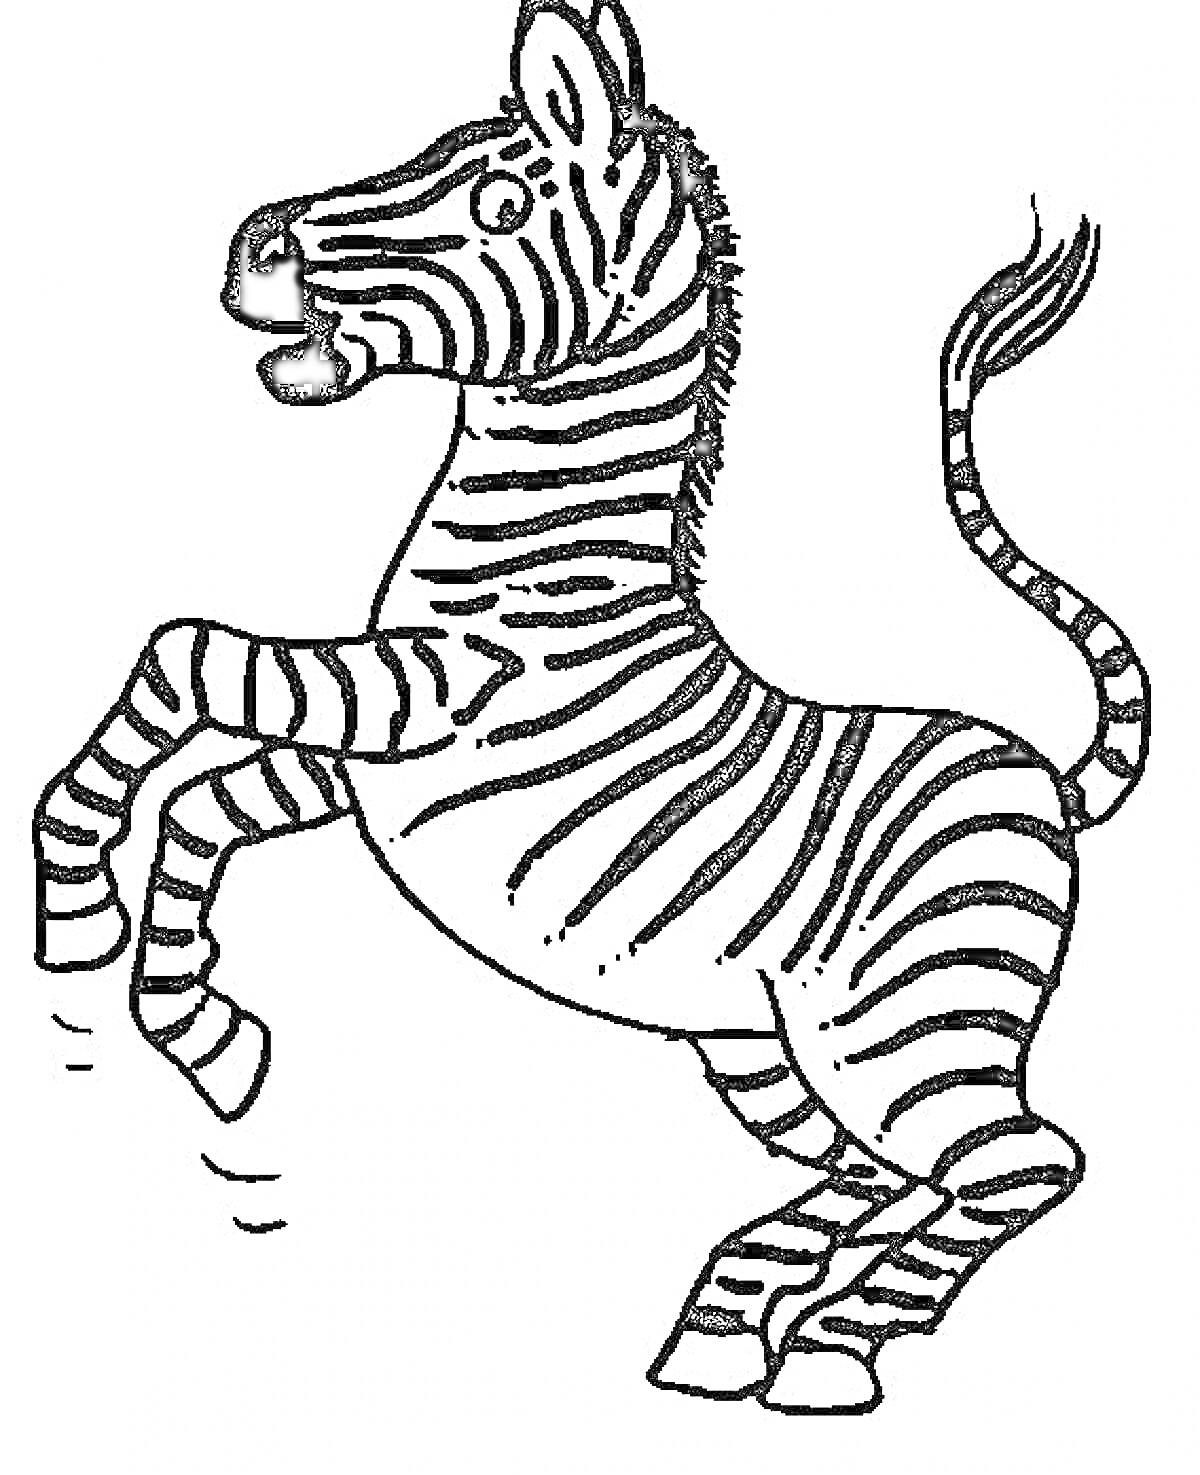 Раскраска Зебра на задних ногах с полосатым телом